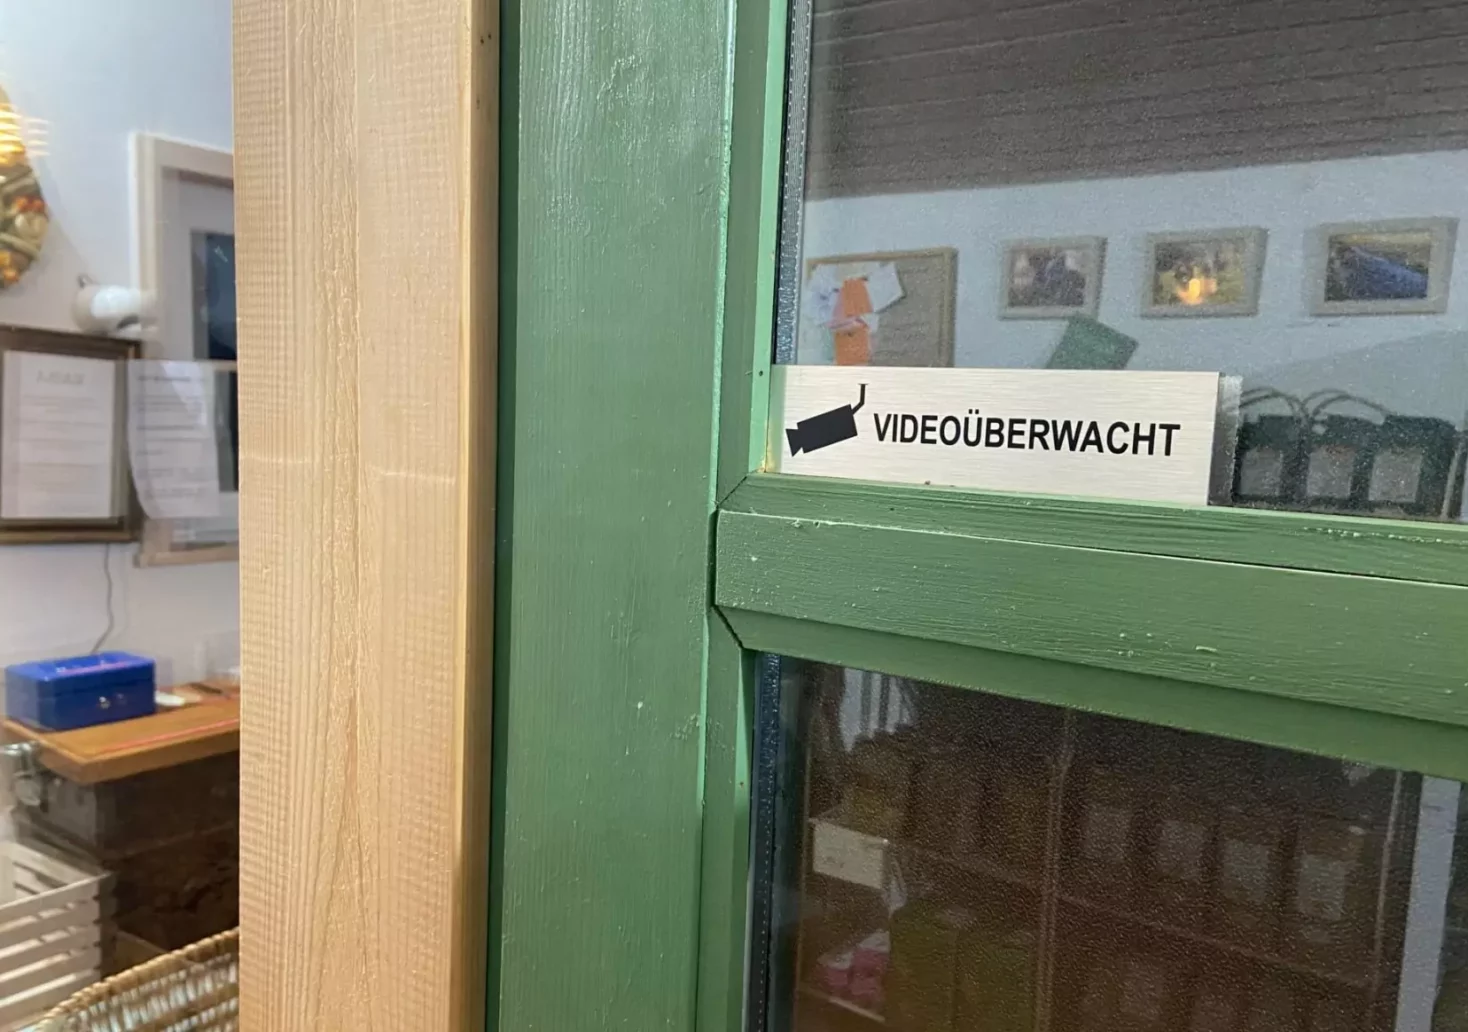 Ein Bild auf 5min.at zeigt den Hinweis "Videoüberwachung" auf der Tür eines Selbstbedienungsladens in Kärnten.